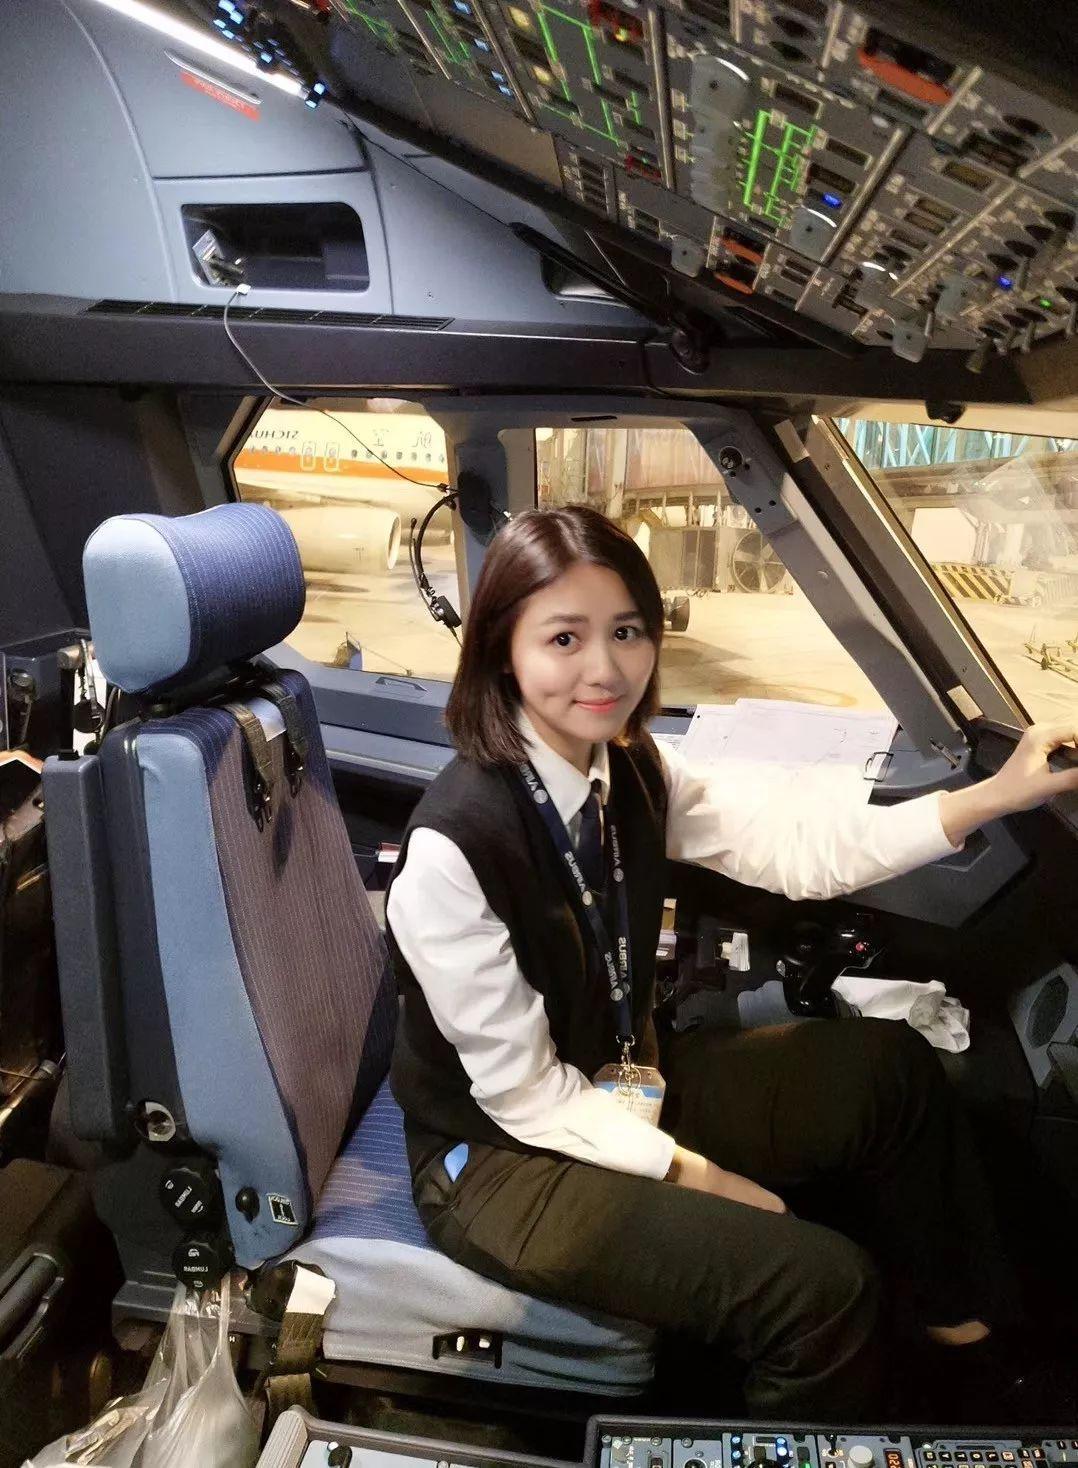 Chân dung nữ cơ trưởng trẻ nhất thế giới: 19 tuổi đã lái máy bay, thu nhập gần 350 triệu đồng/tháng - ảnh 1